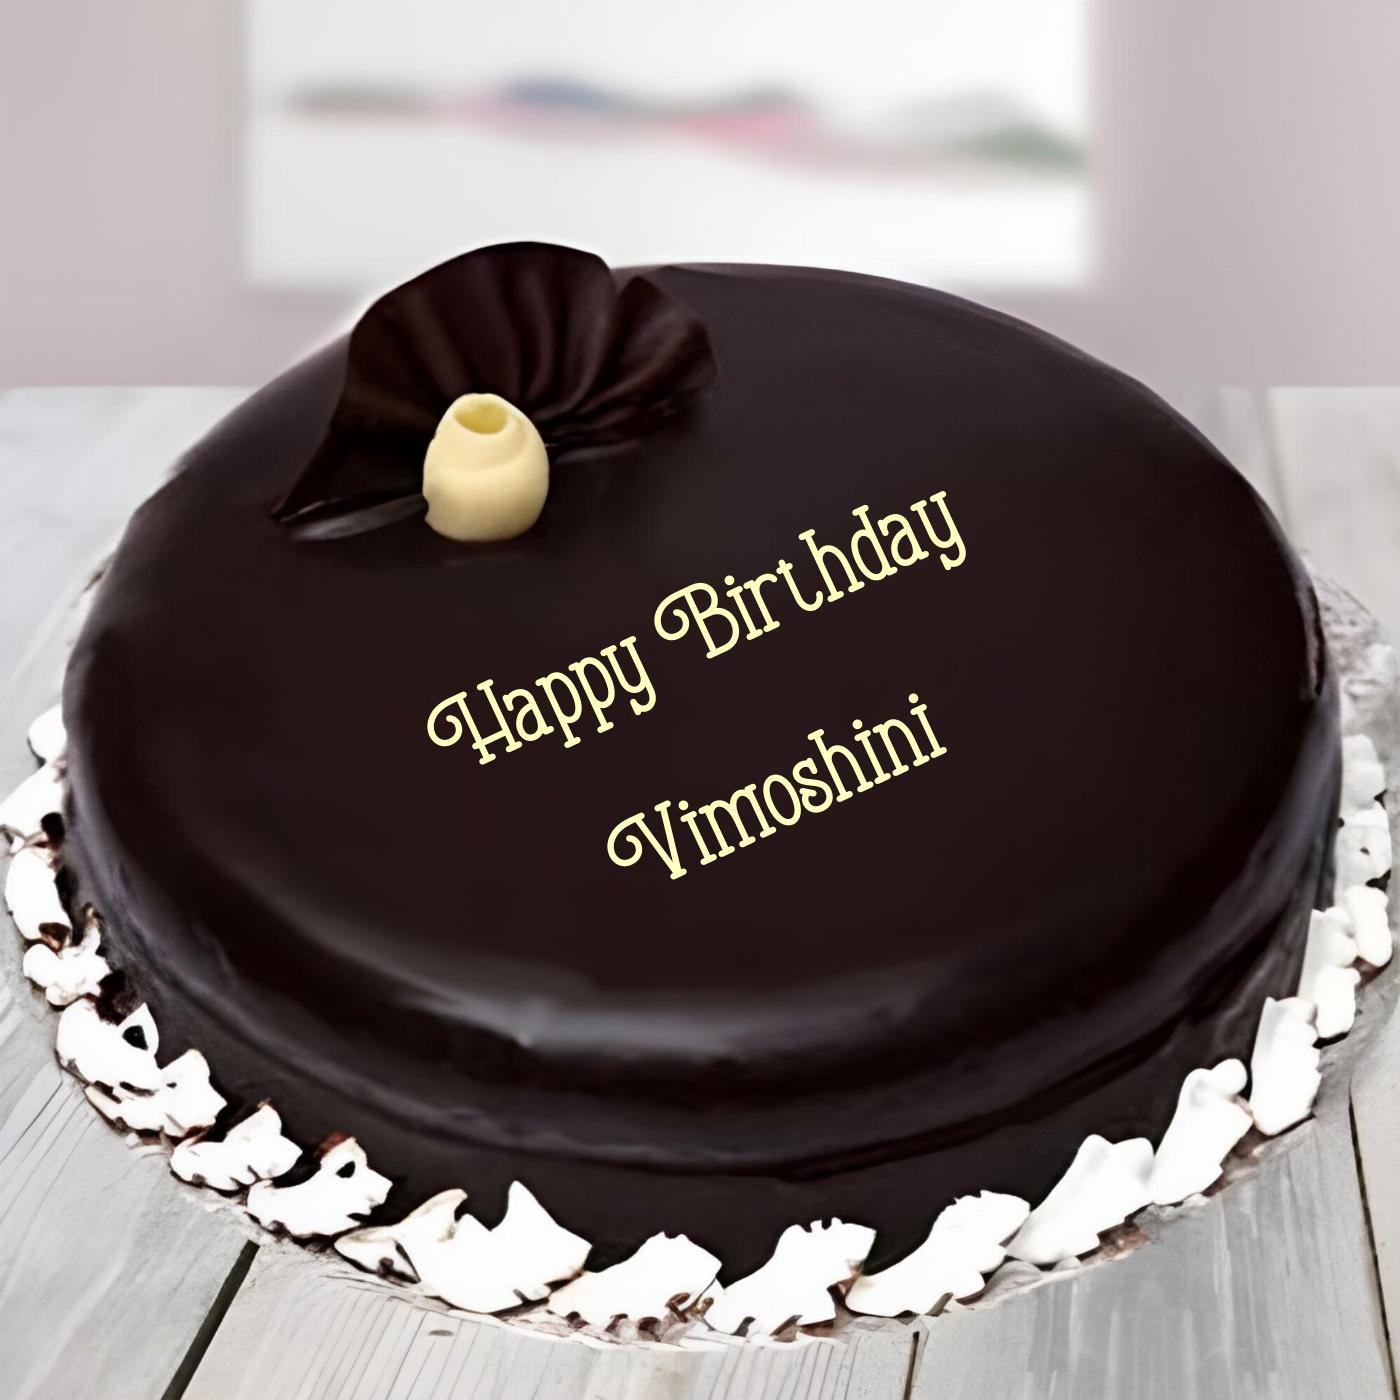 Happy Birthday Vimoshini Beautiful Chocolate Cake